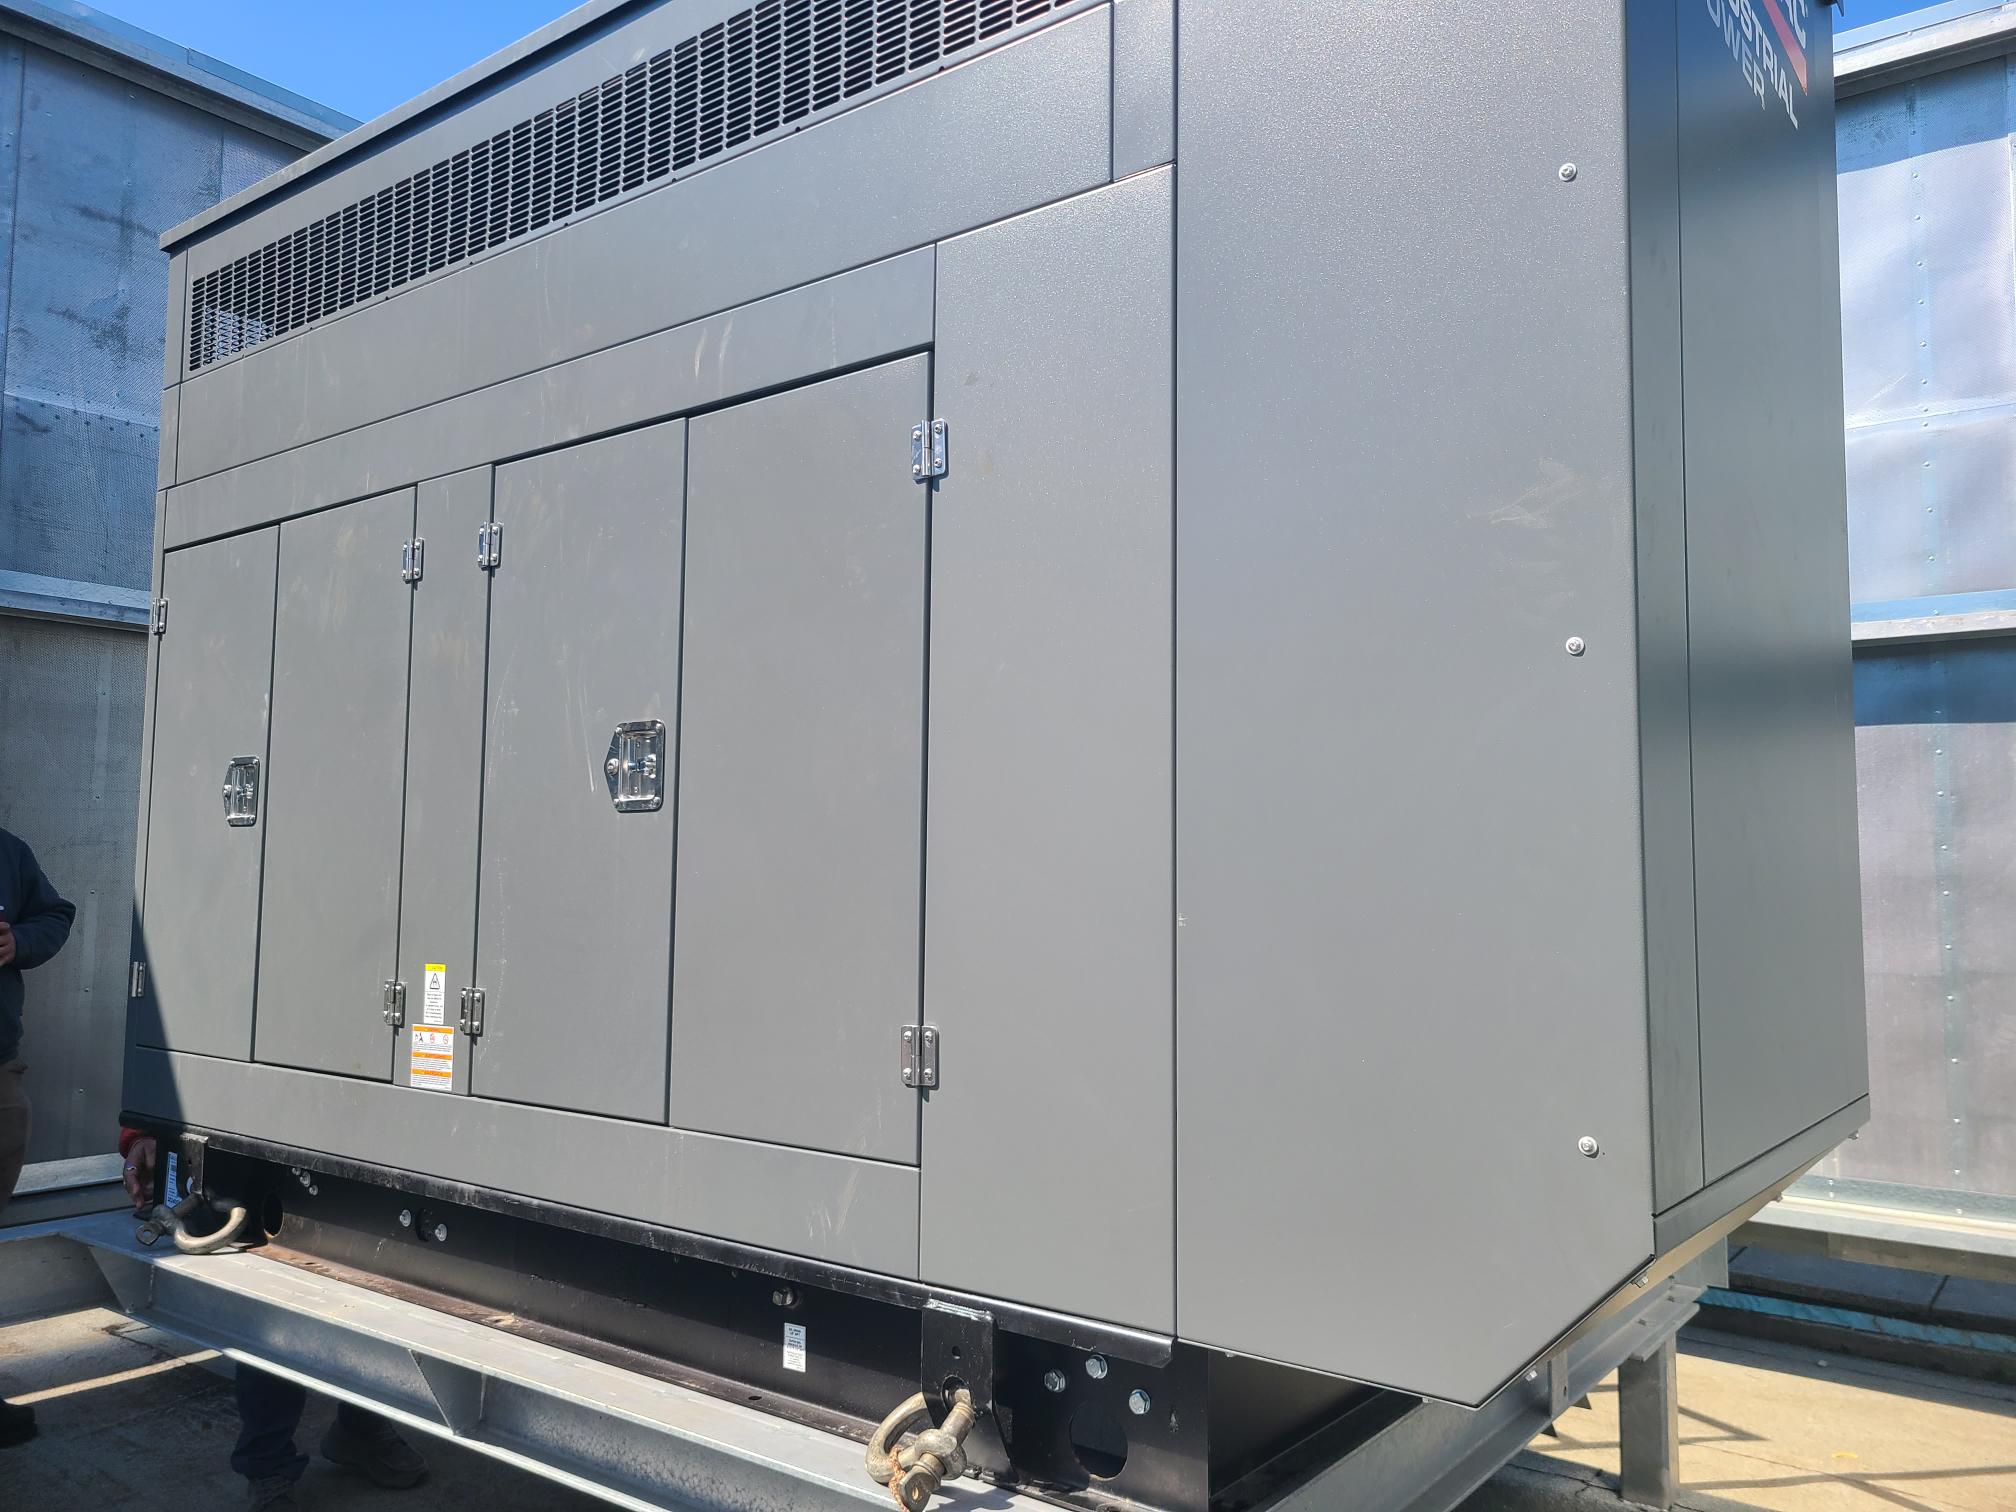 TCHC Generator Replacement at 310 Dundas